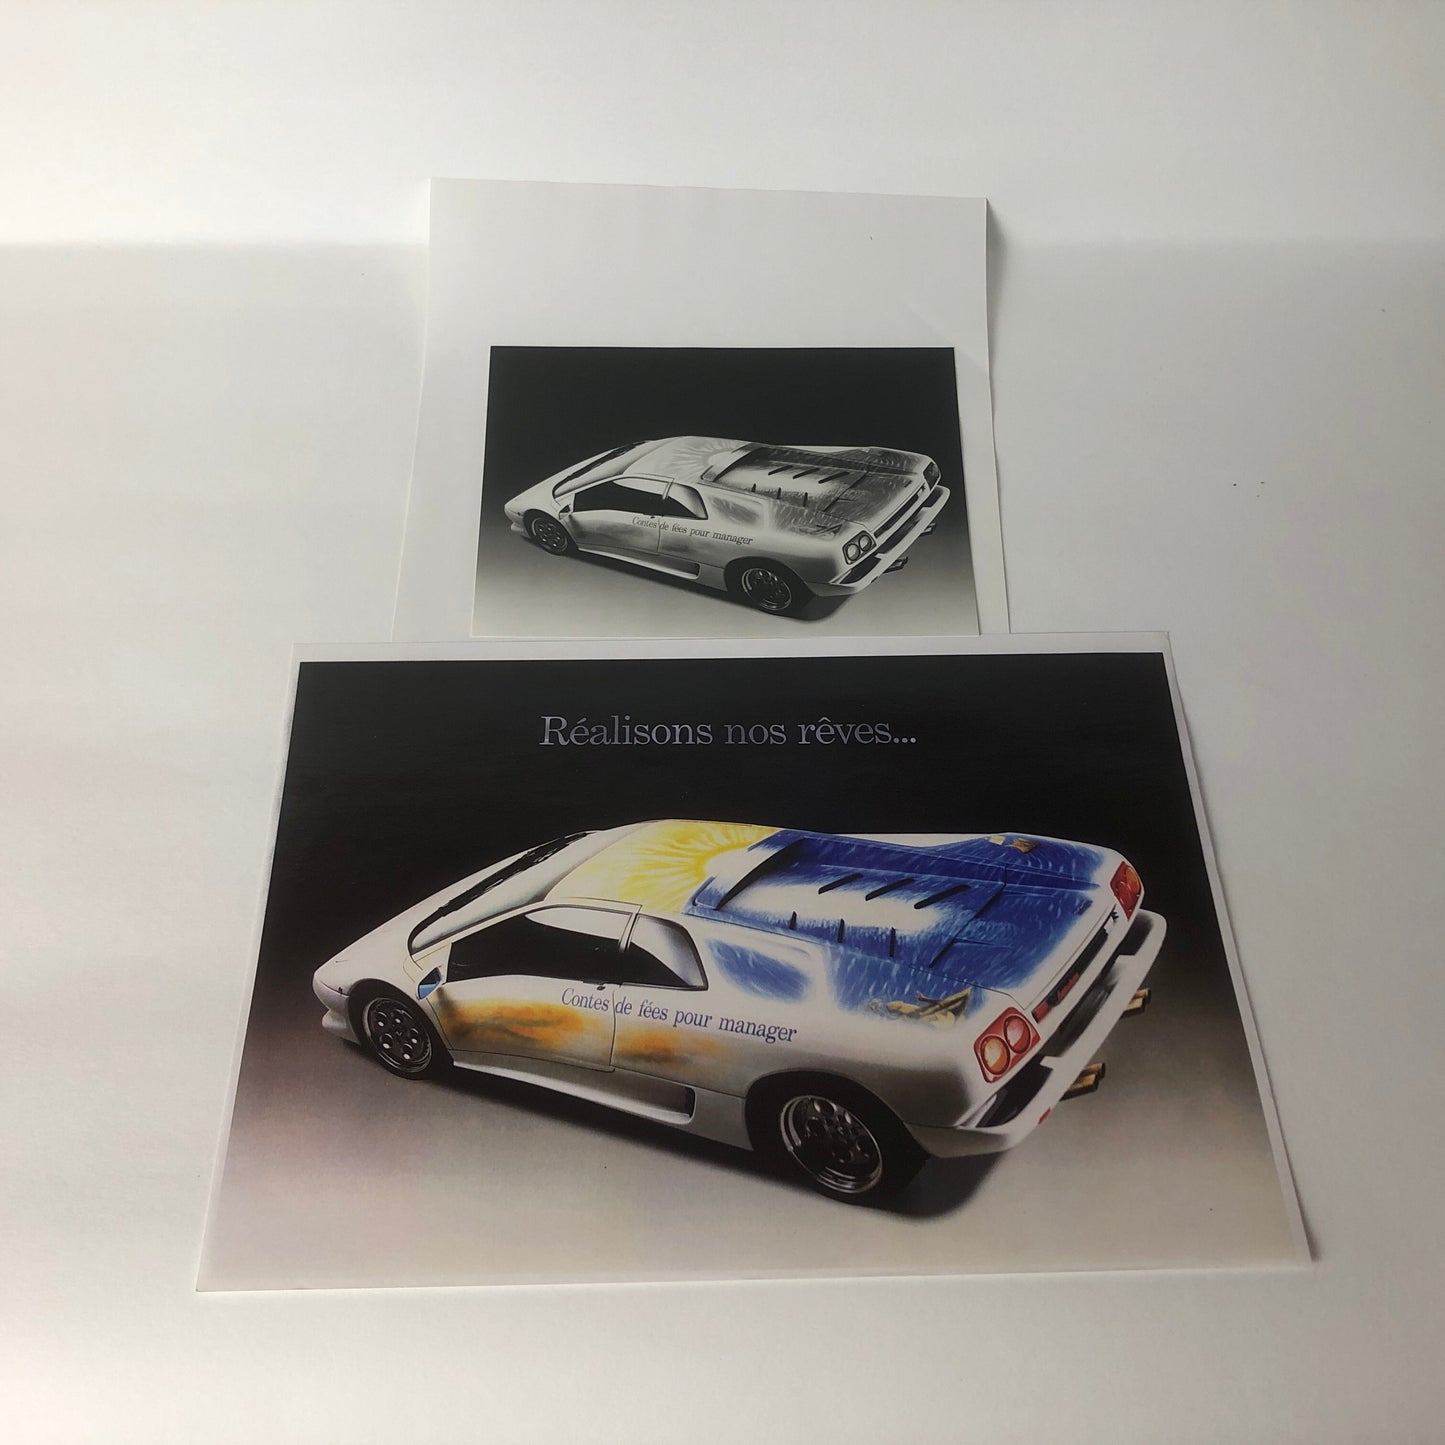 Lamborghini Bozzetto Presentazione del Libro "Contes de Fées pour Manager" di Mario Bondanini